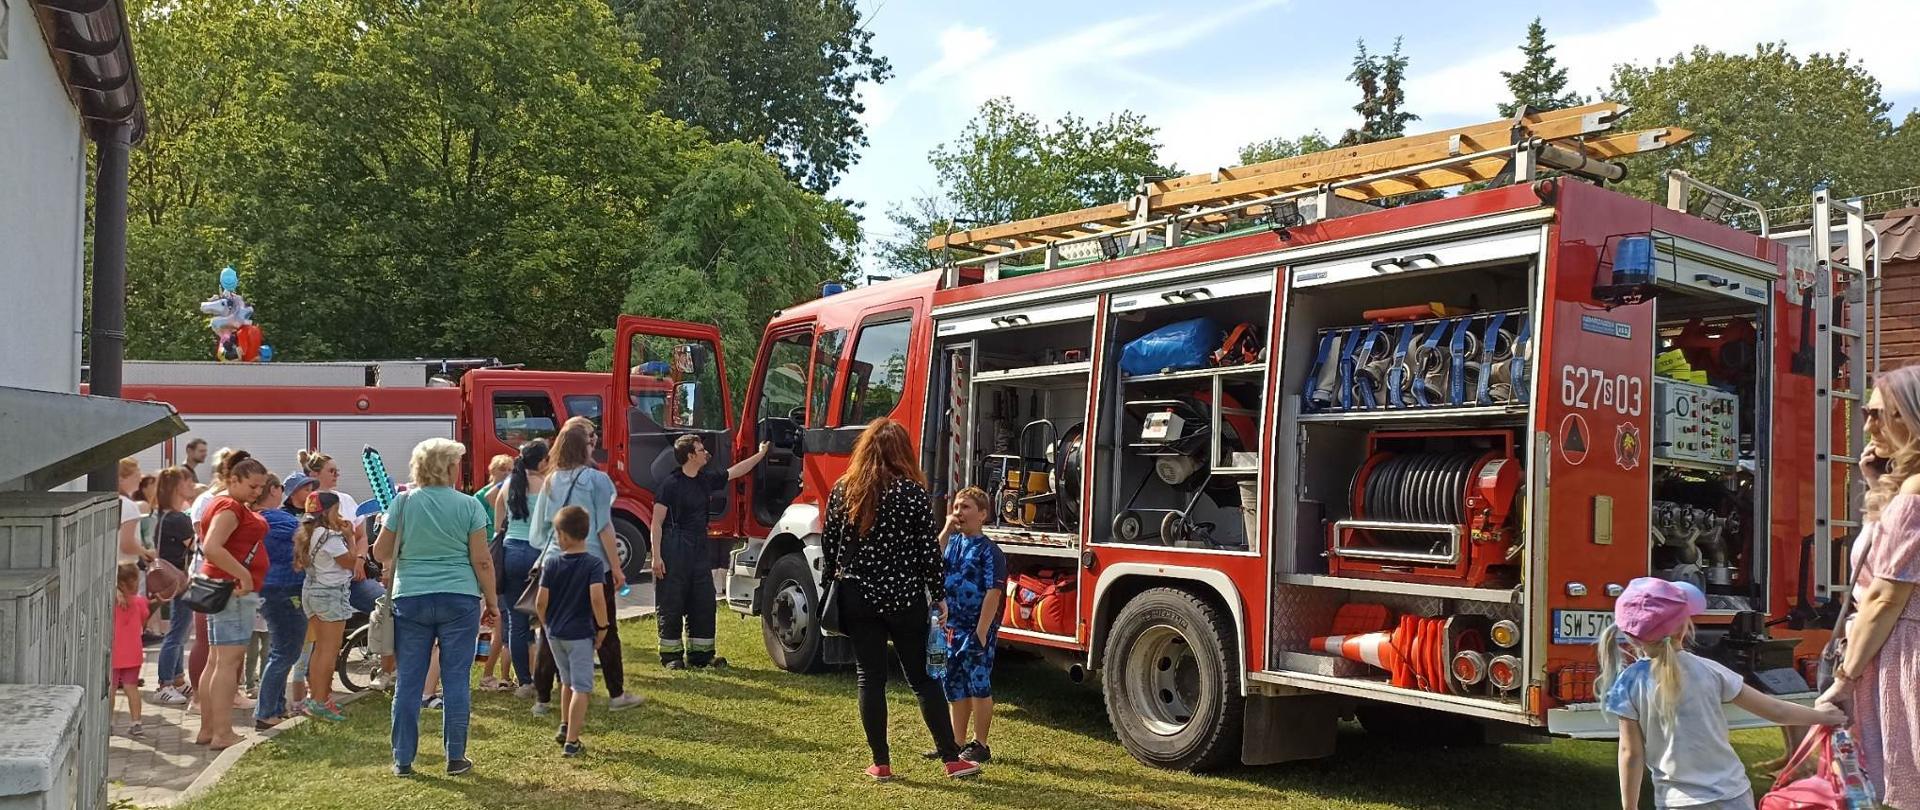 Zdjęcie przedstawia dwa wozy strażackie. Pomiędzy autami dorośli i dzieci przyglądają się wozom strażackim.